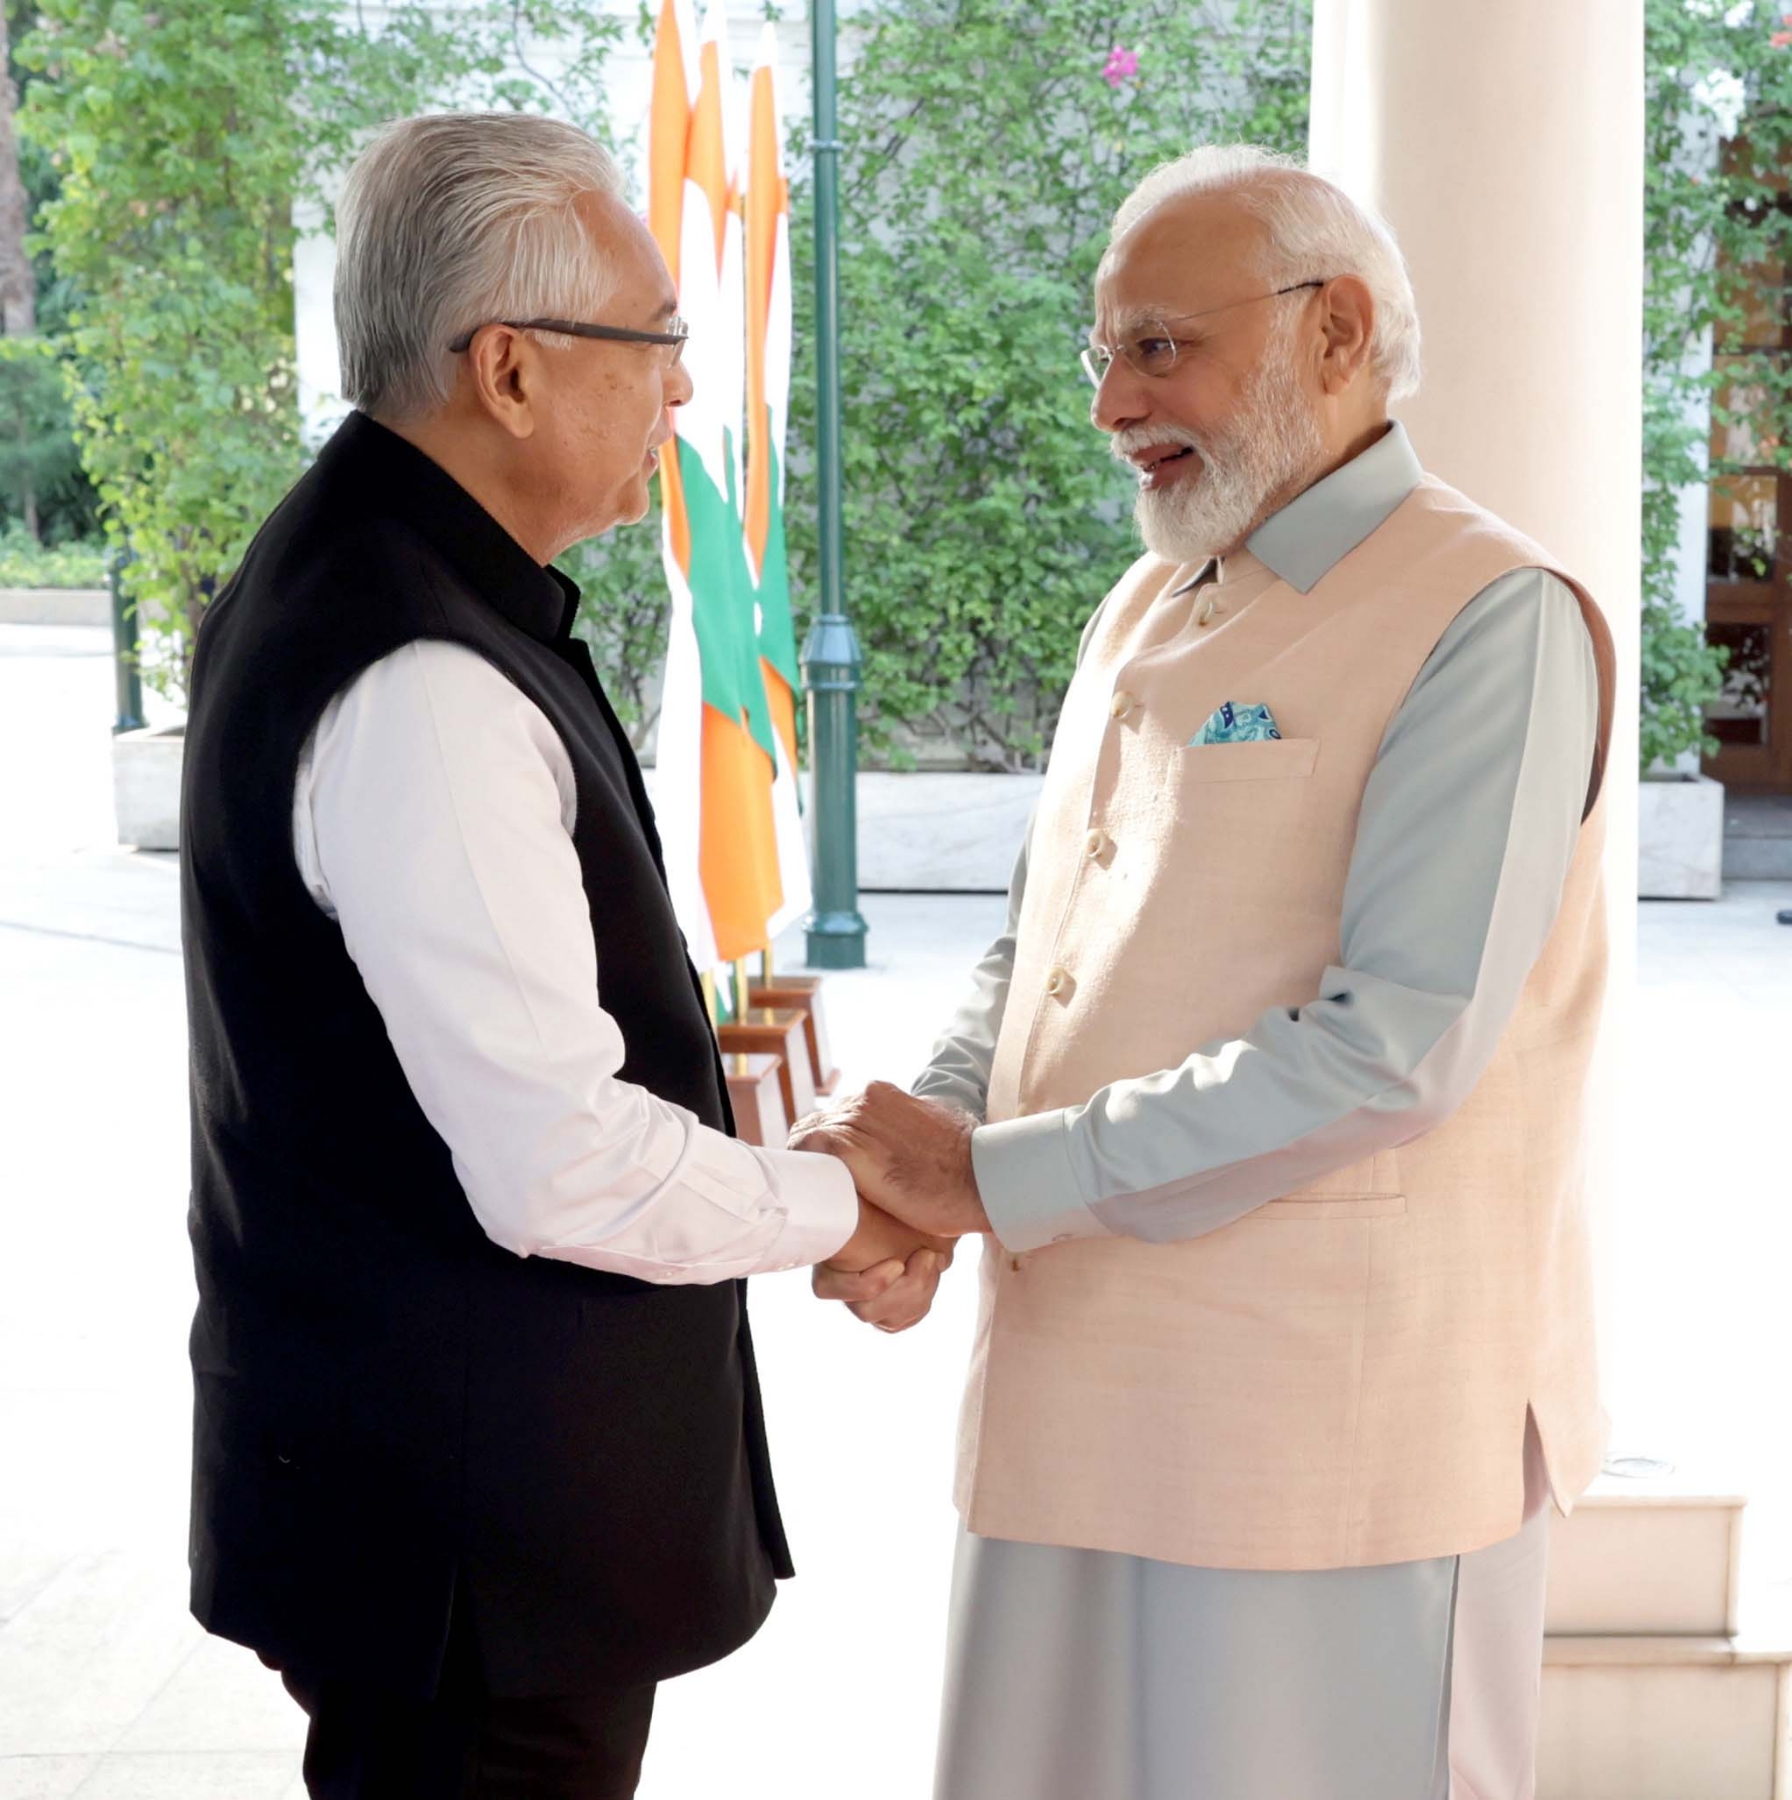 नई दिल्ली में शुक्रवार 08 सितंबर को प्रधान मंत्री नरेन्द्र मोदी और मॉरीशस के प्रधान मंत्री प्रविंद कुमार जुगनौथ के साथ द्विपक्षीय बैठक के दौरान। हिन्दुस्थान समाचार/फोटो गणेश बिष्ट